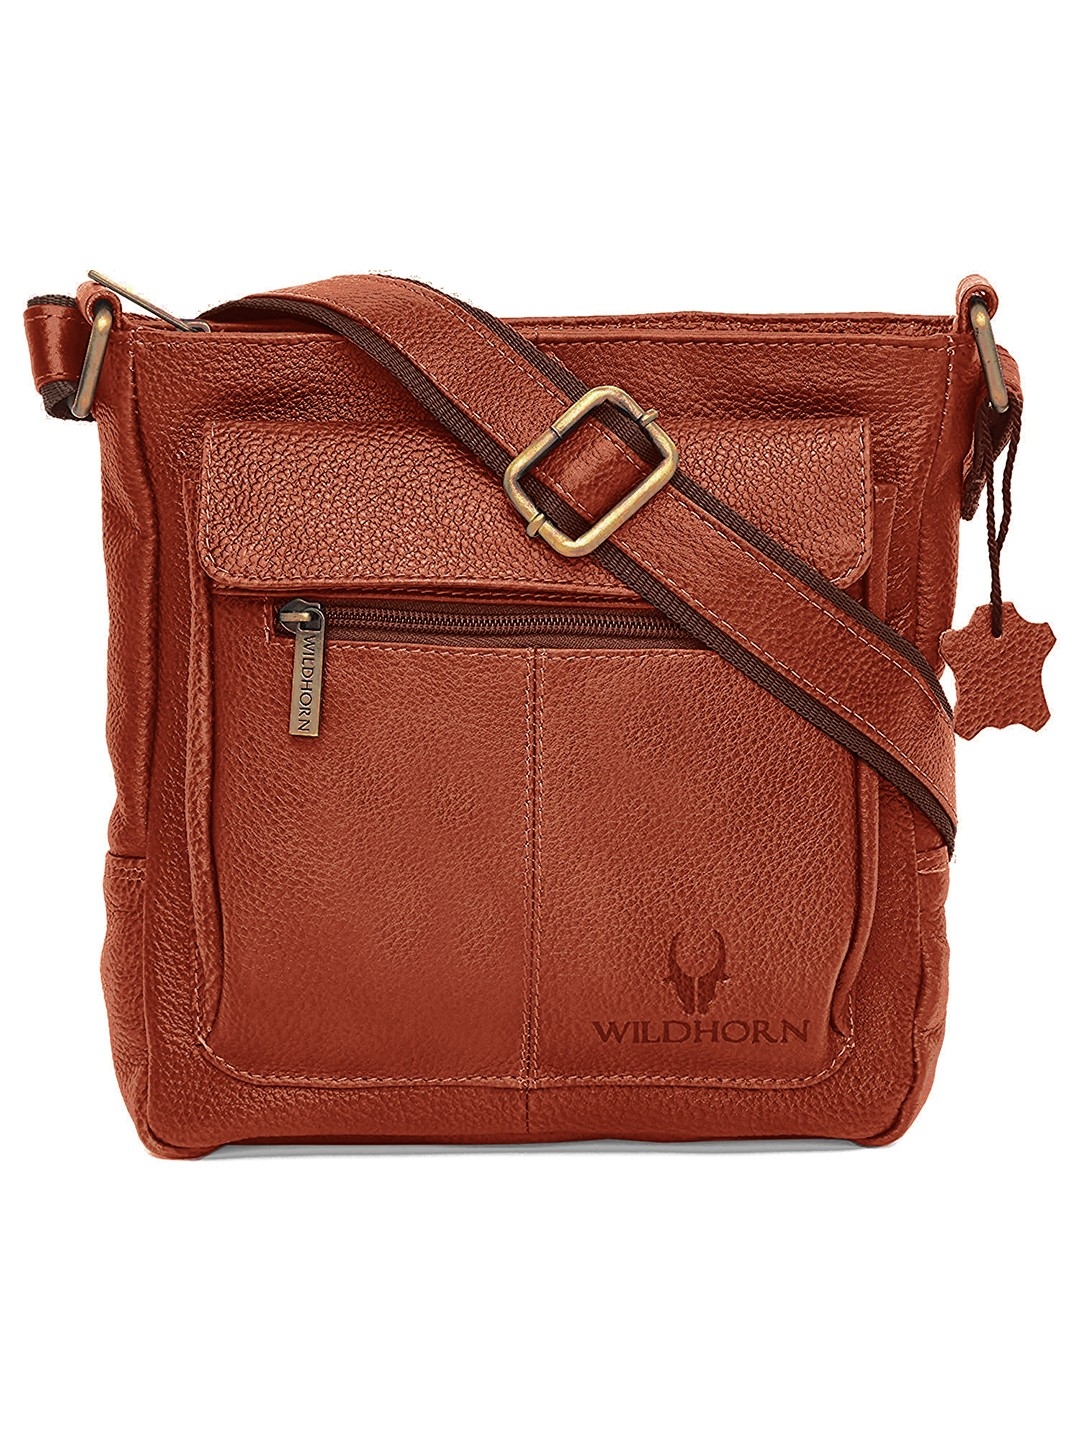 WildHorn | WildHorn Tan Classic Leather Adjustable Strap Sling Bag for Men  0